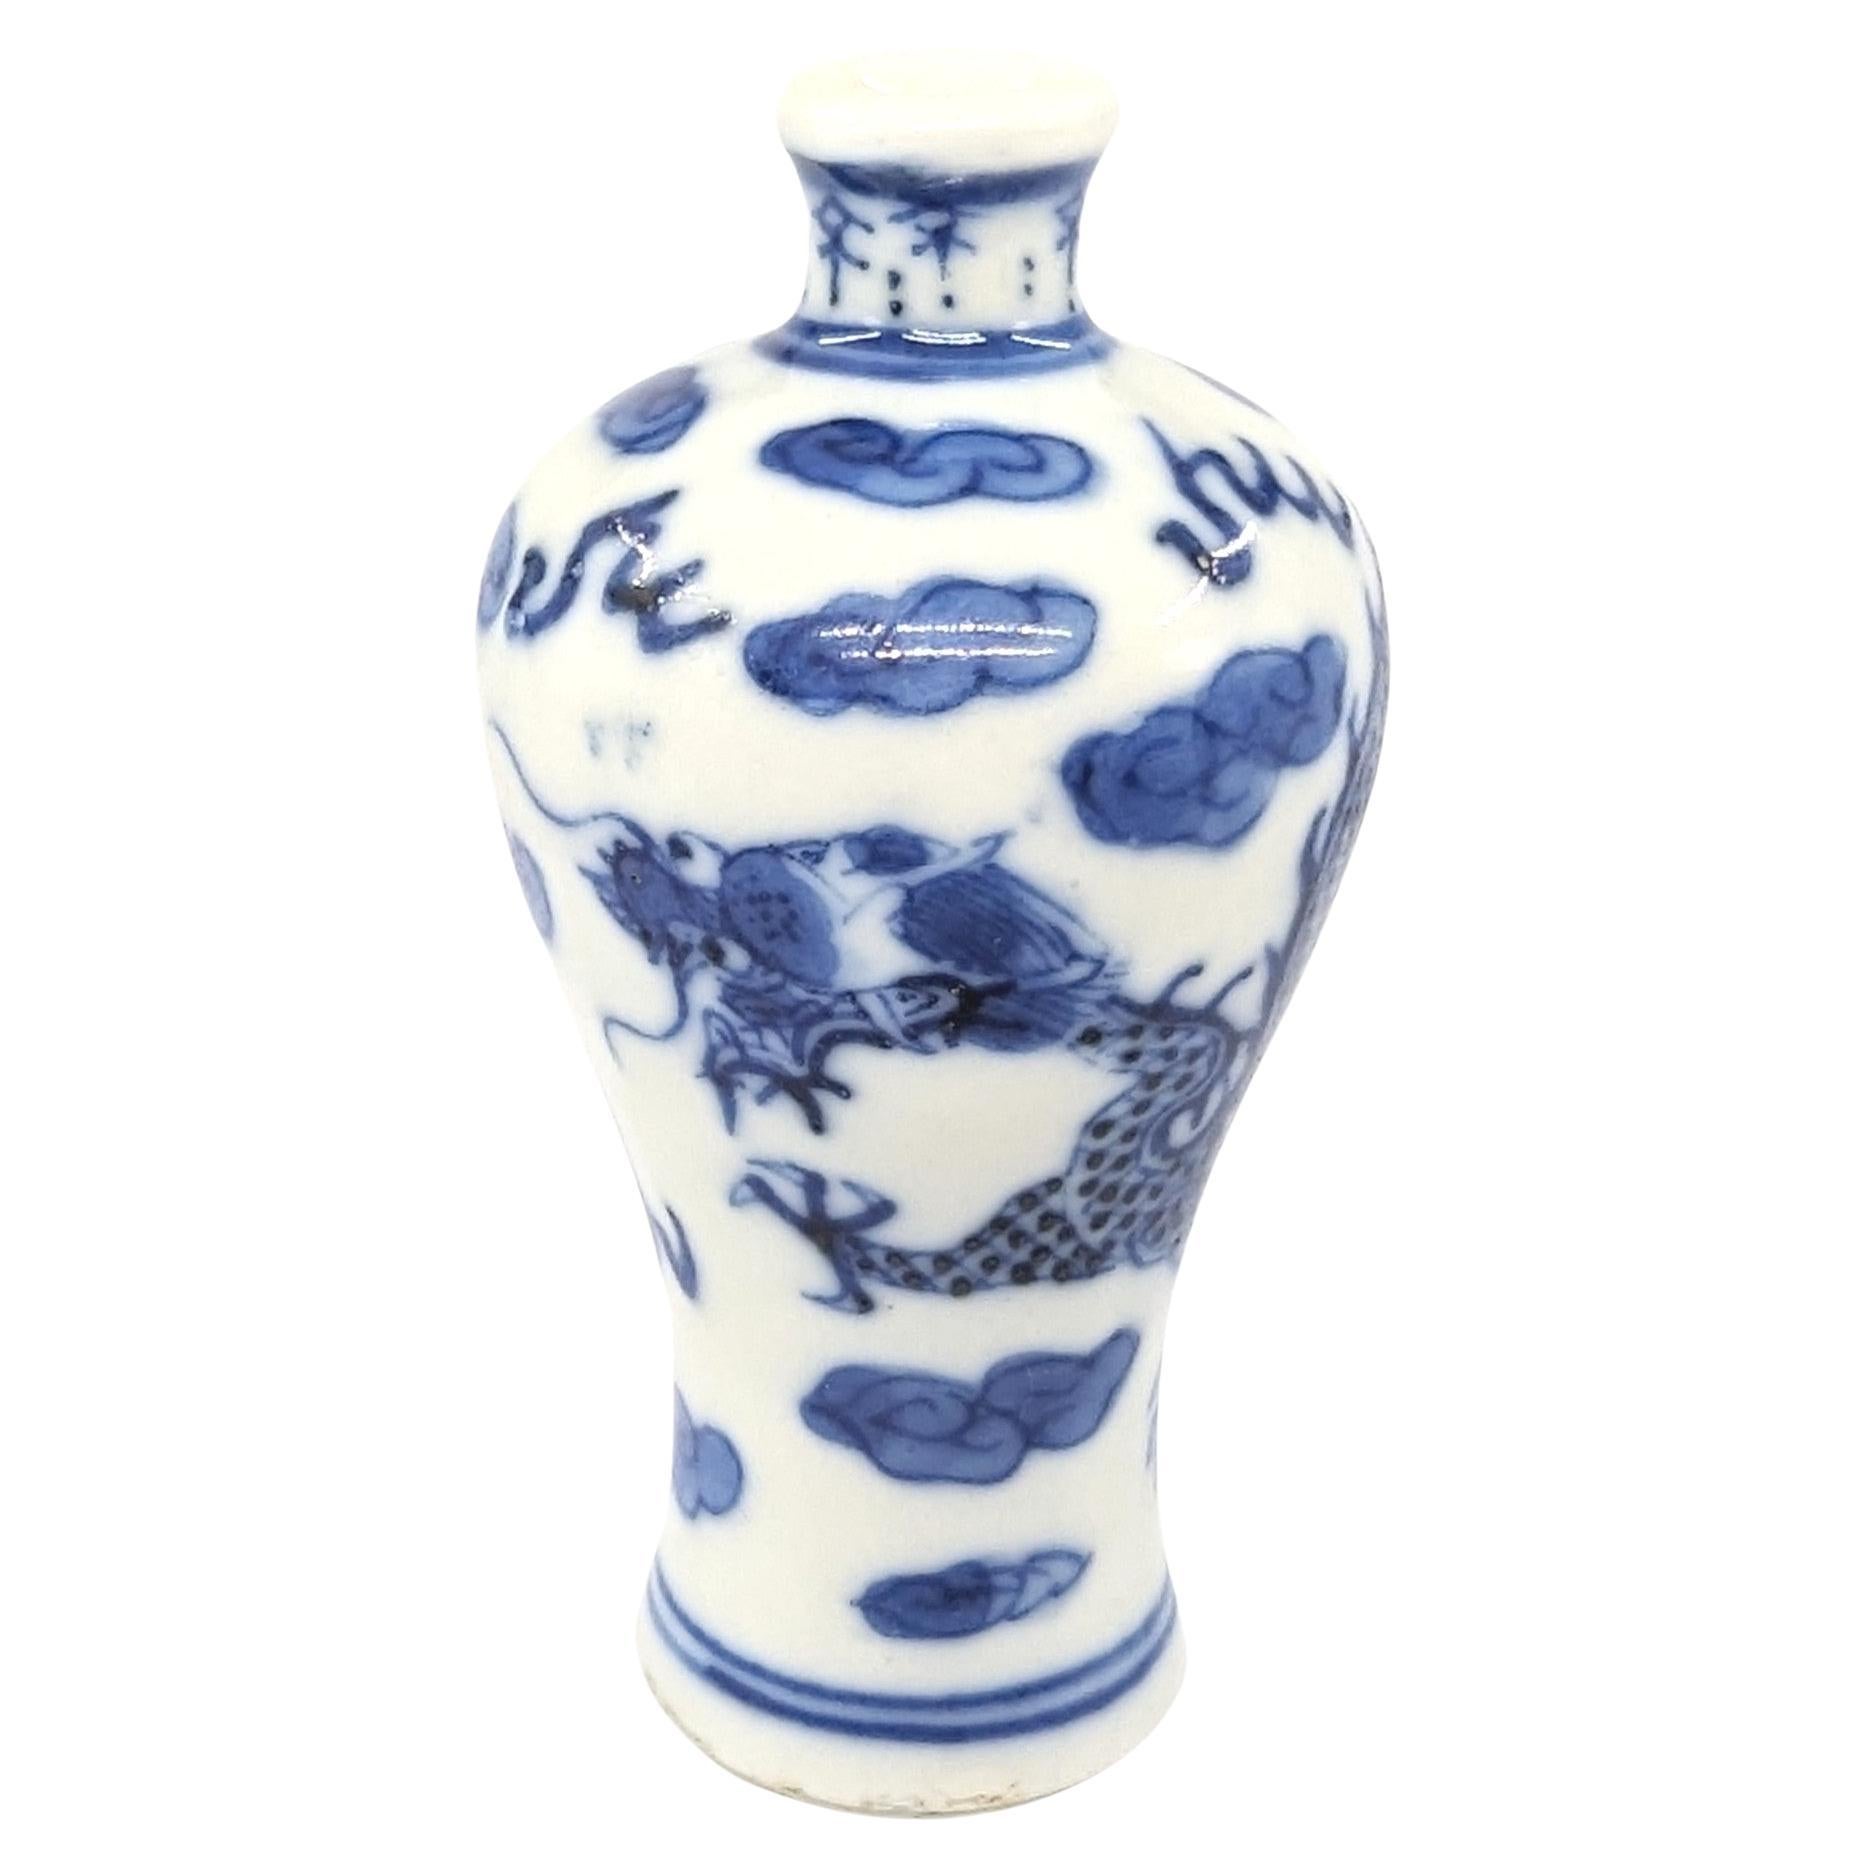 Ancienne bouteille à priser en porcelaine chinoise de forme meiping, peinte en bleu et blanc sous glaçure d'un dragon animé à quatre griffes poursuivant une perle parmi des nuages et des flammes.

Circa 1800, fin du 18ème au début du 19ème siècle,